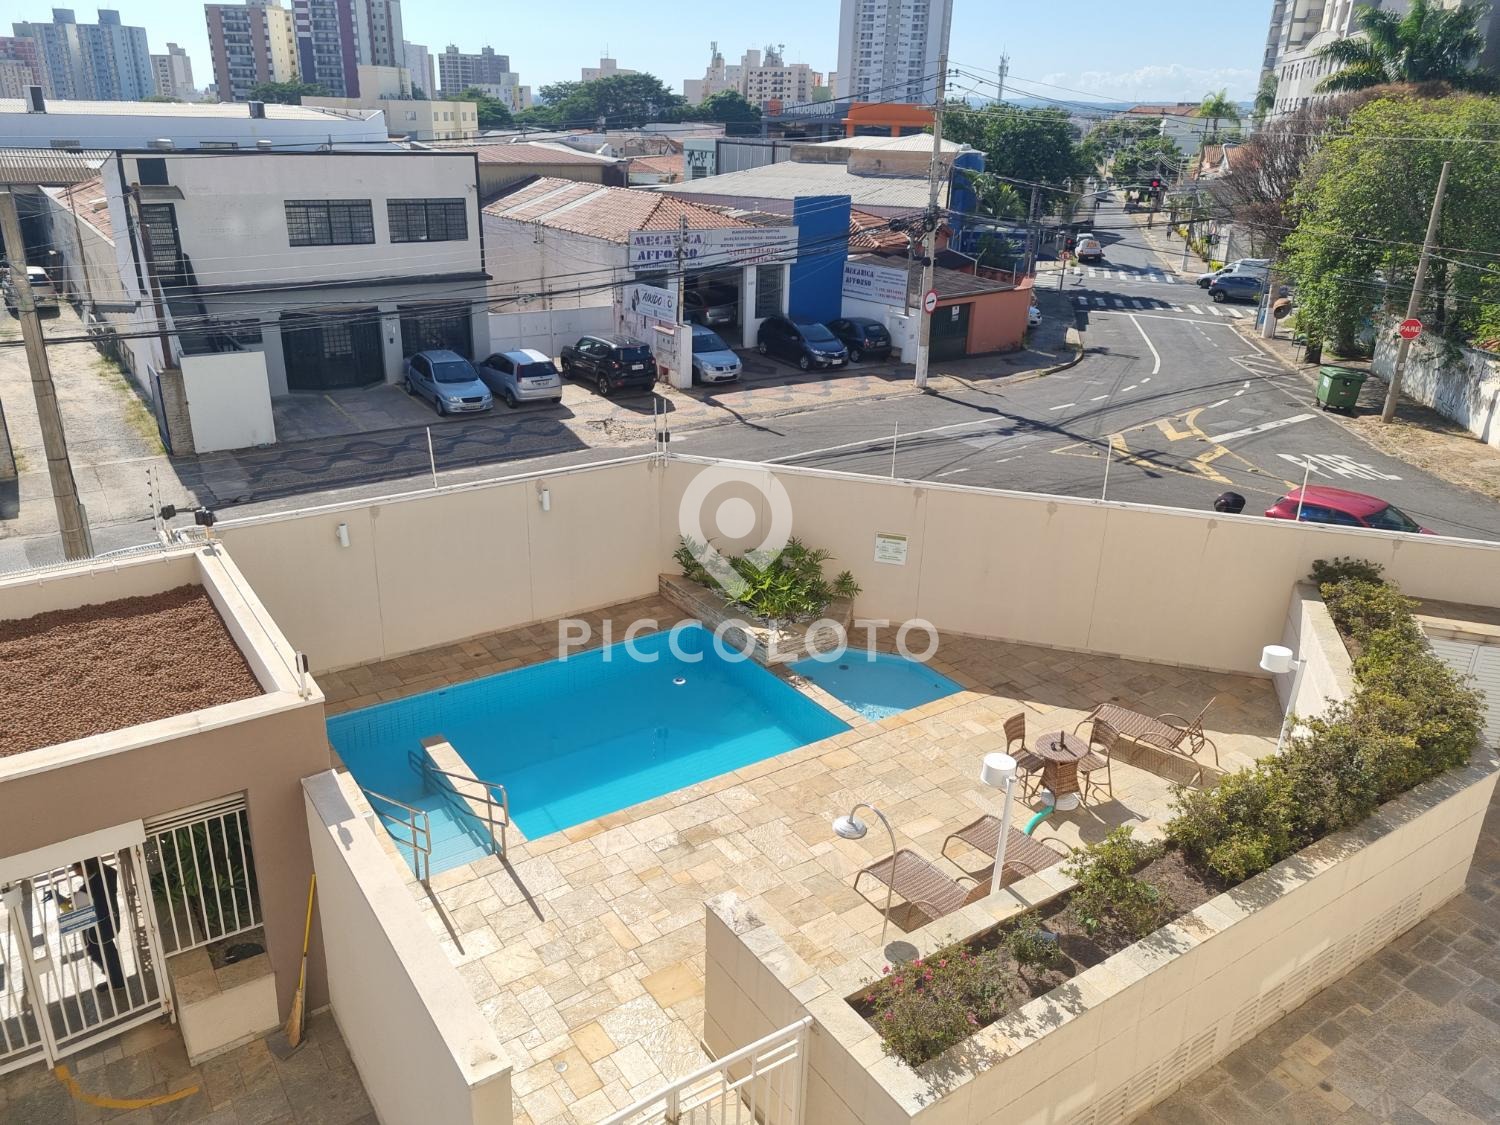 Piccoloto -Apartamento para alugar no Vila João Jorge em Campinas